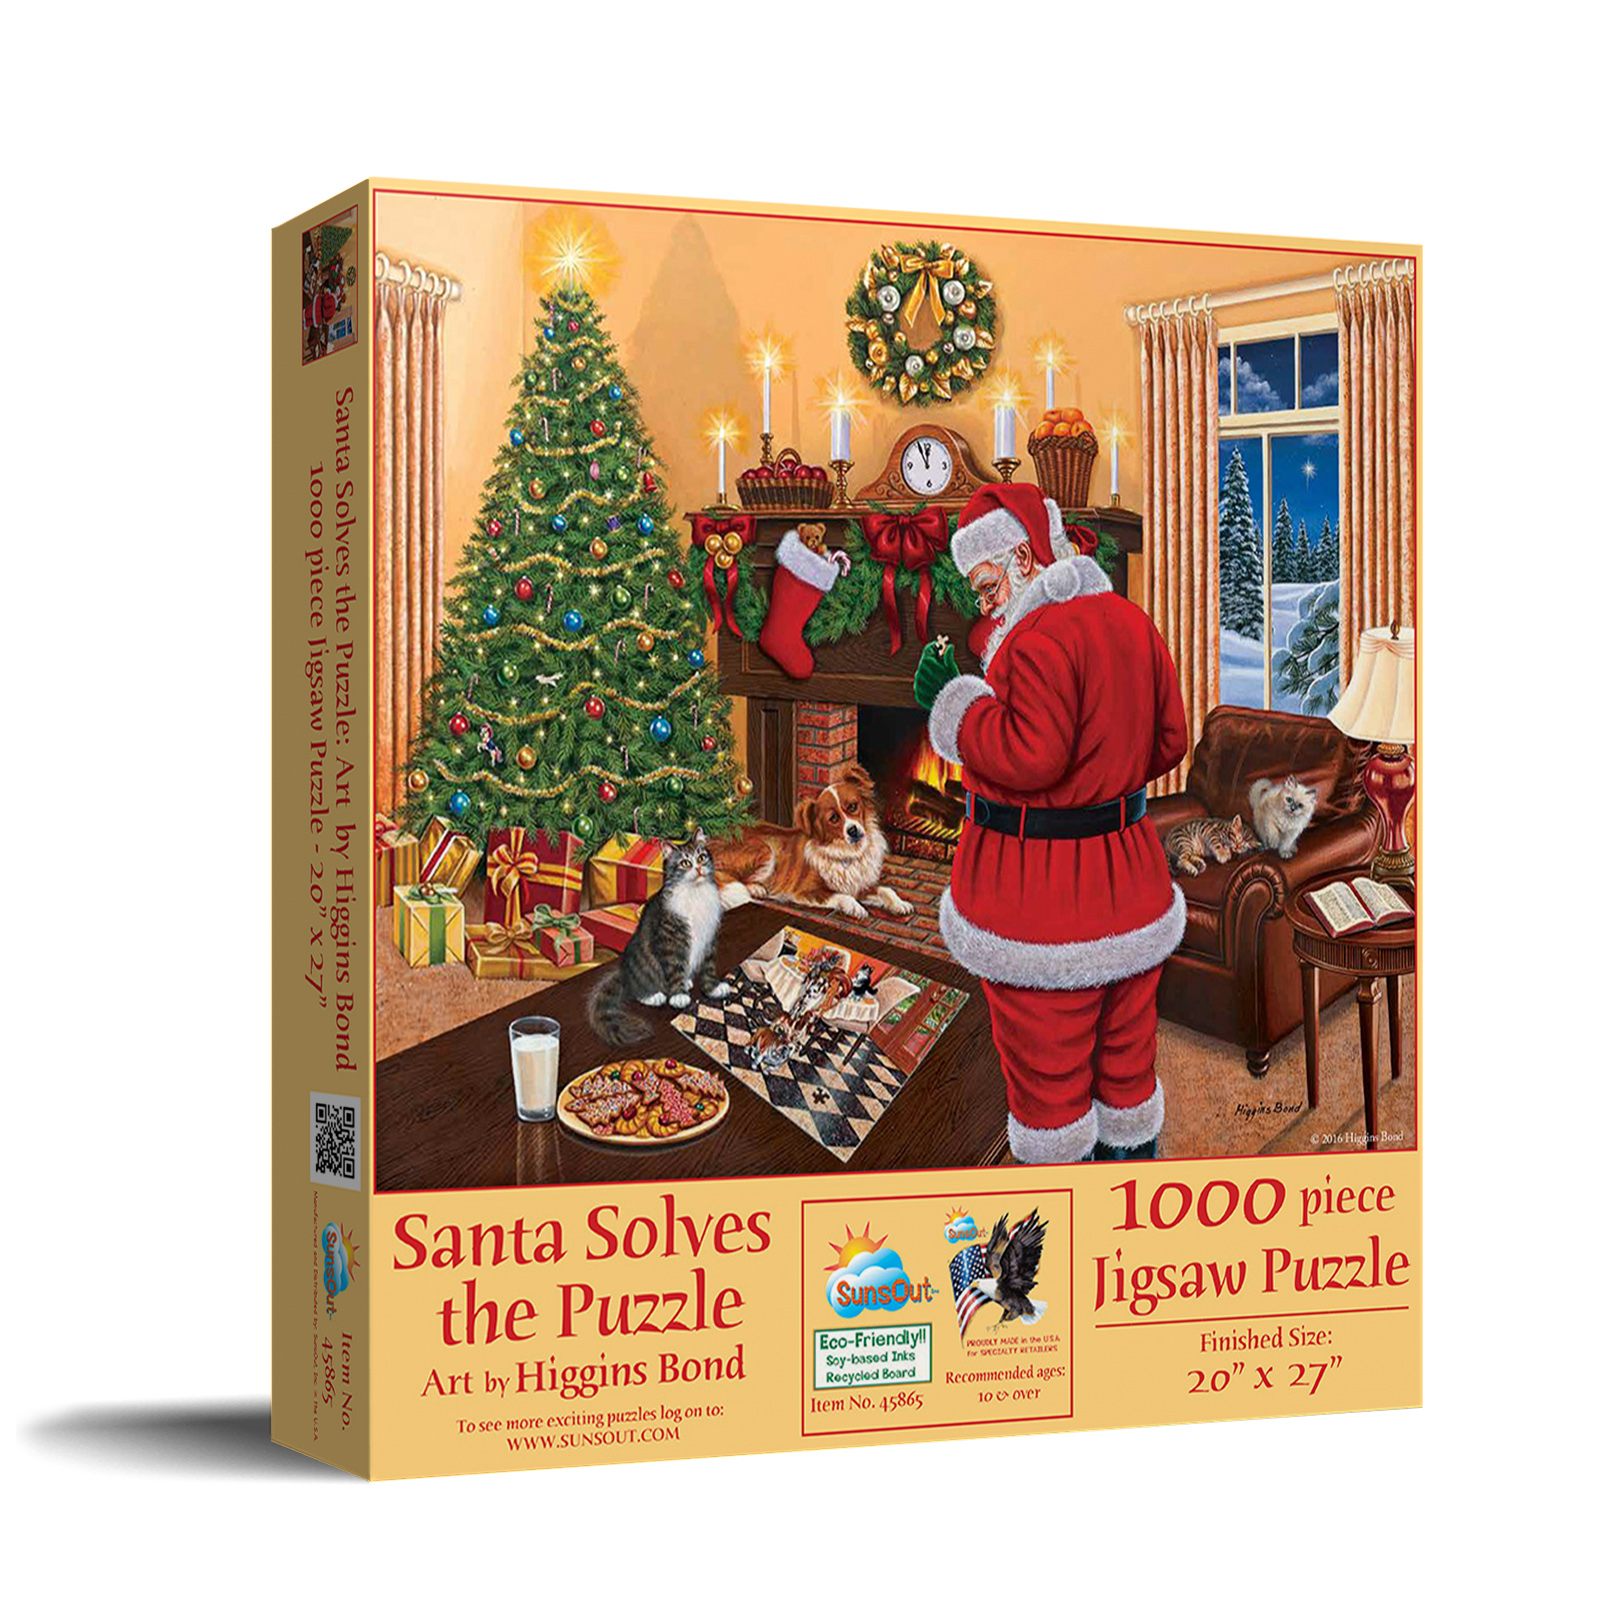 Santa Solves the Puzzle